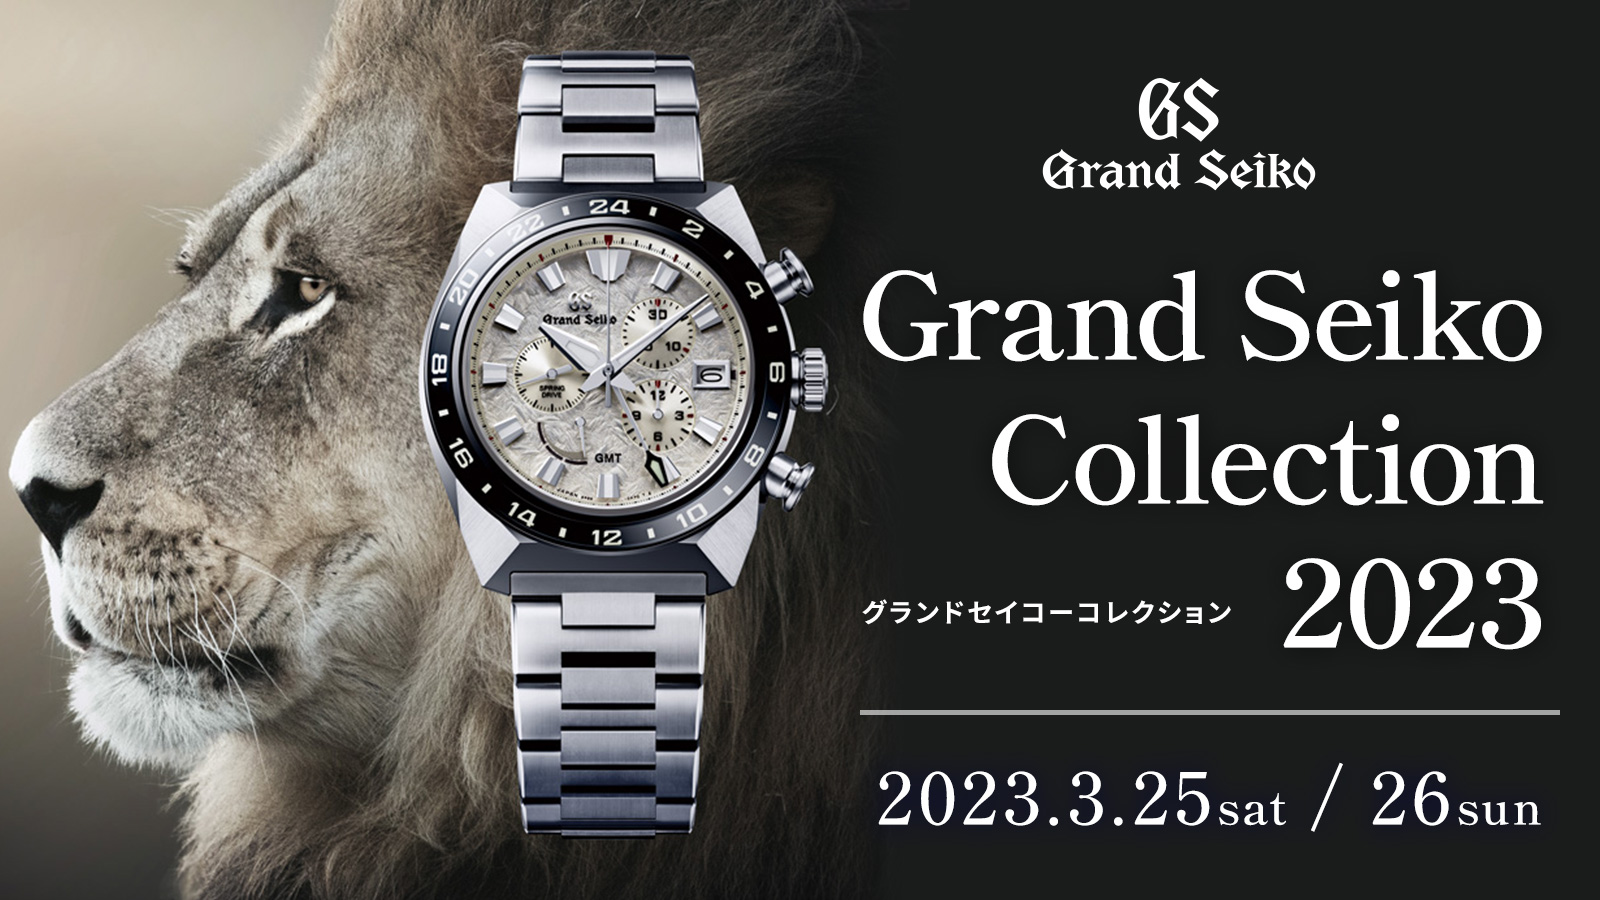 Grand Seiko Collection 2023